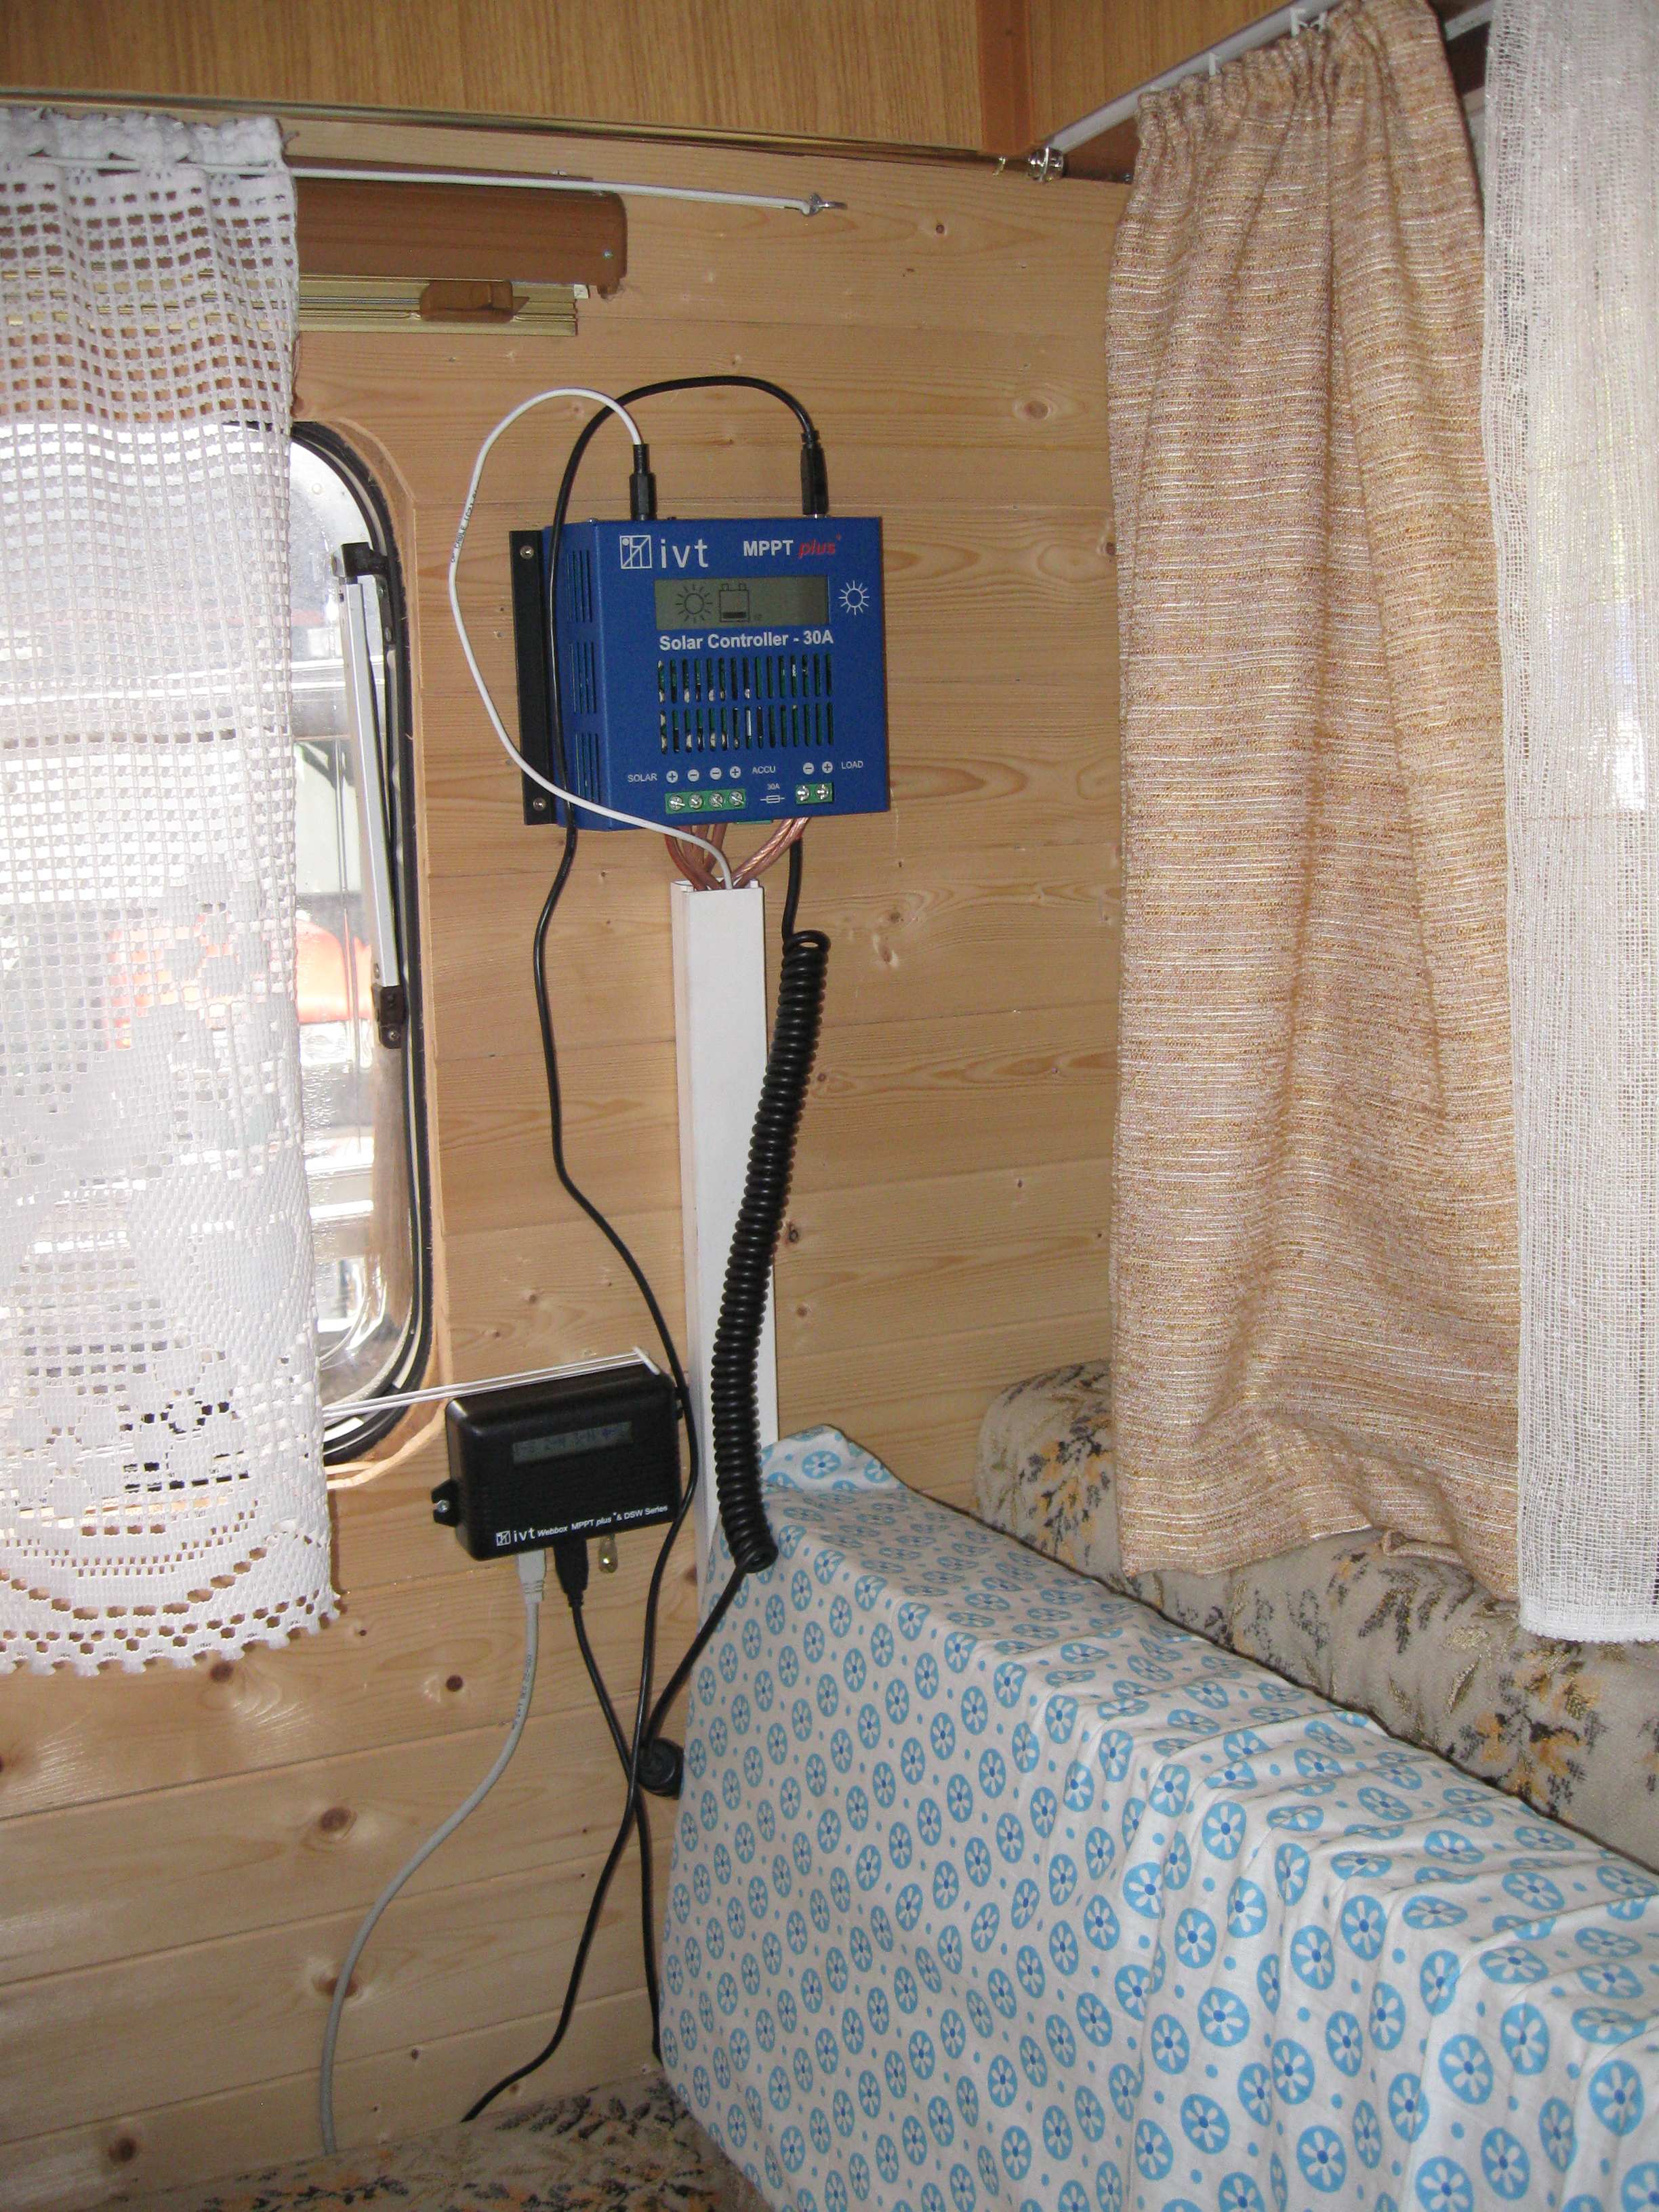 Der IVT MPPT-Plus Solar Controller 30A, und die Webbox an ihrem Platz im Wohnwagen